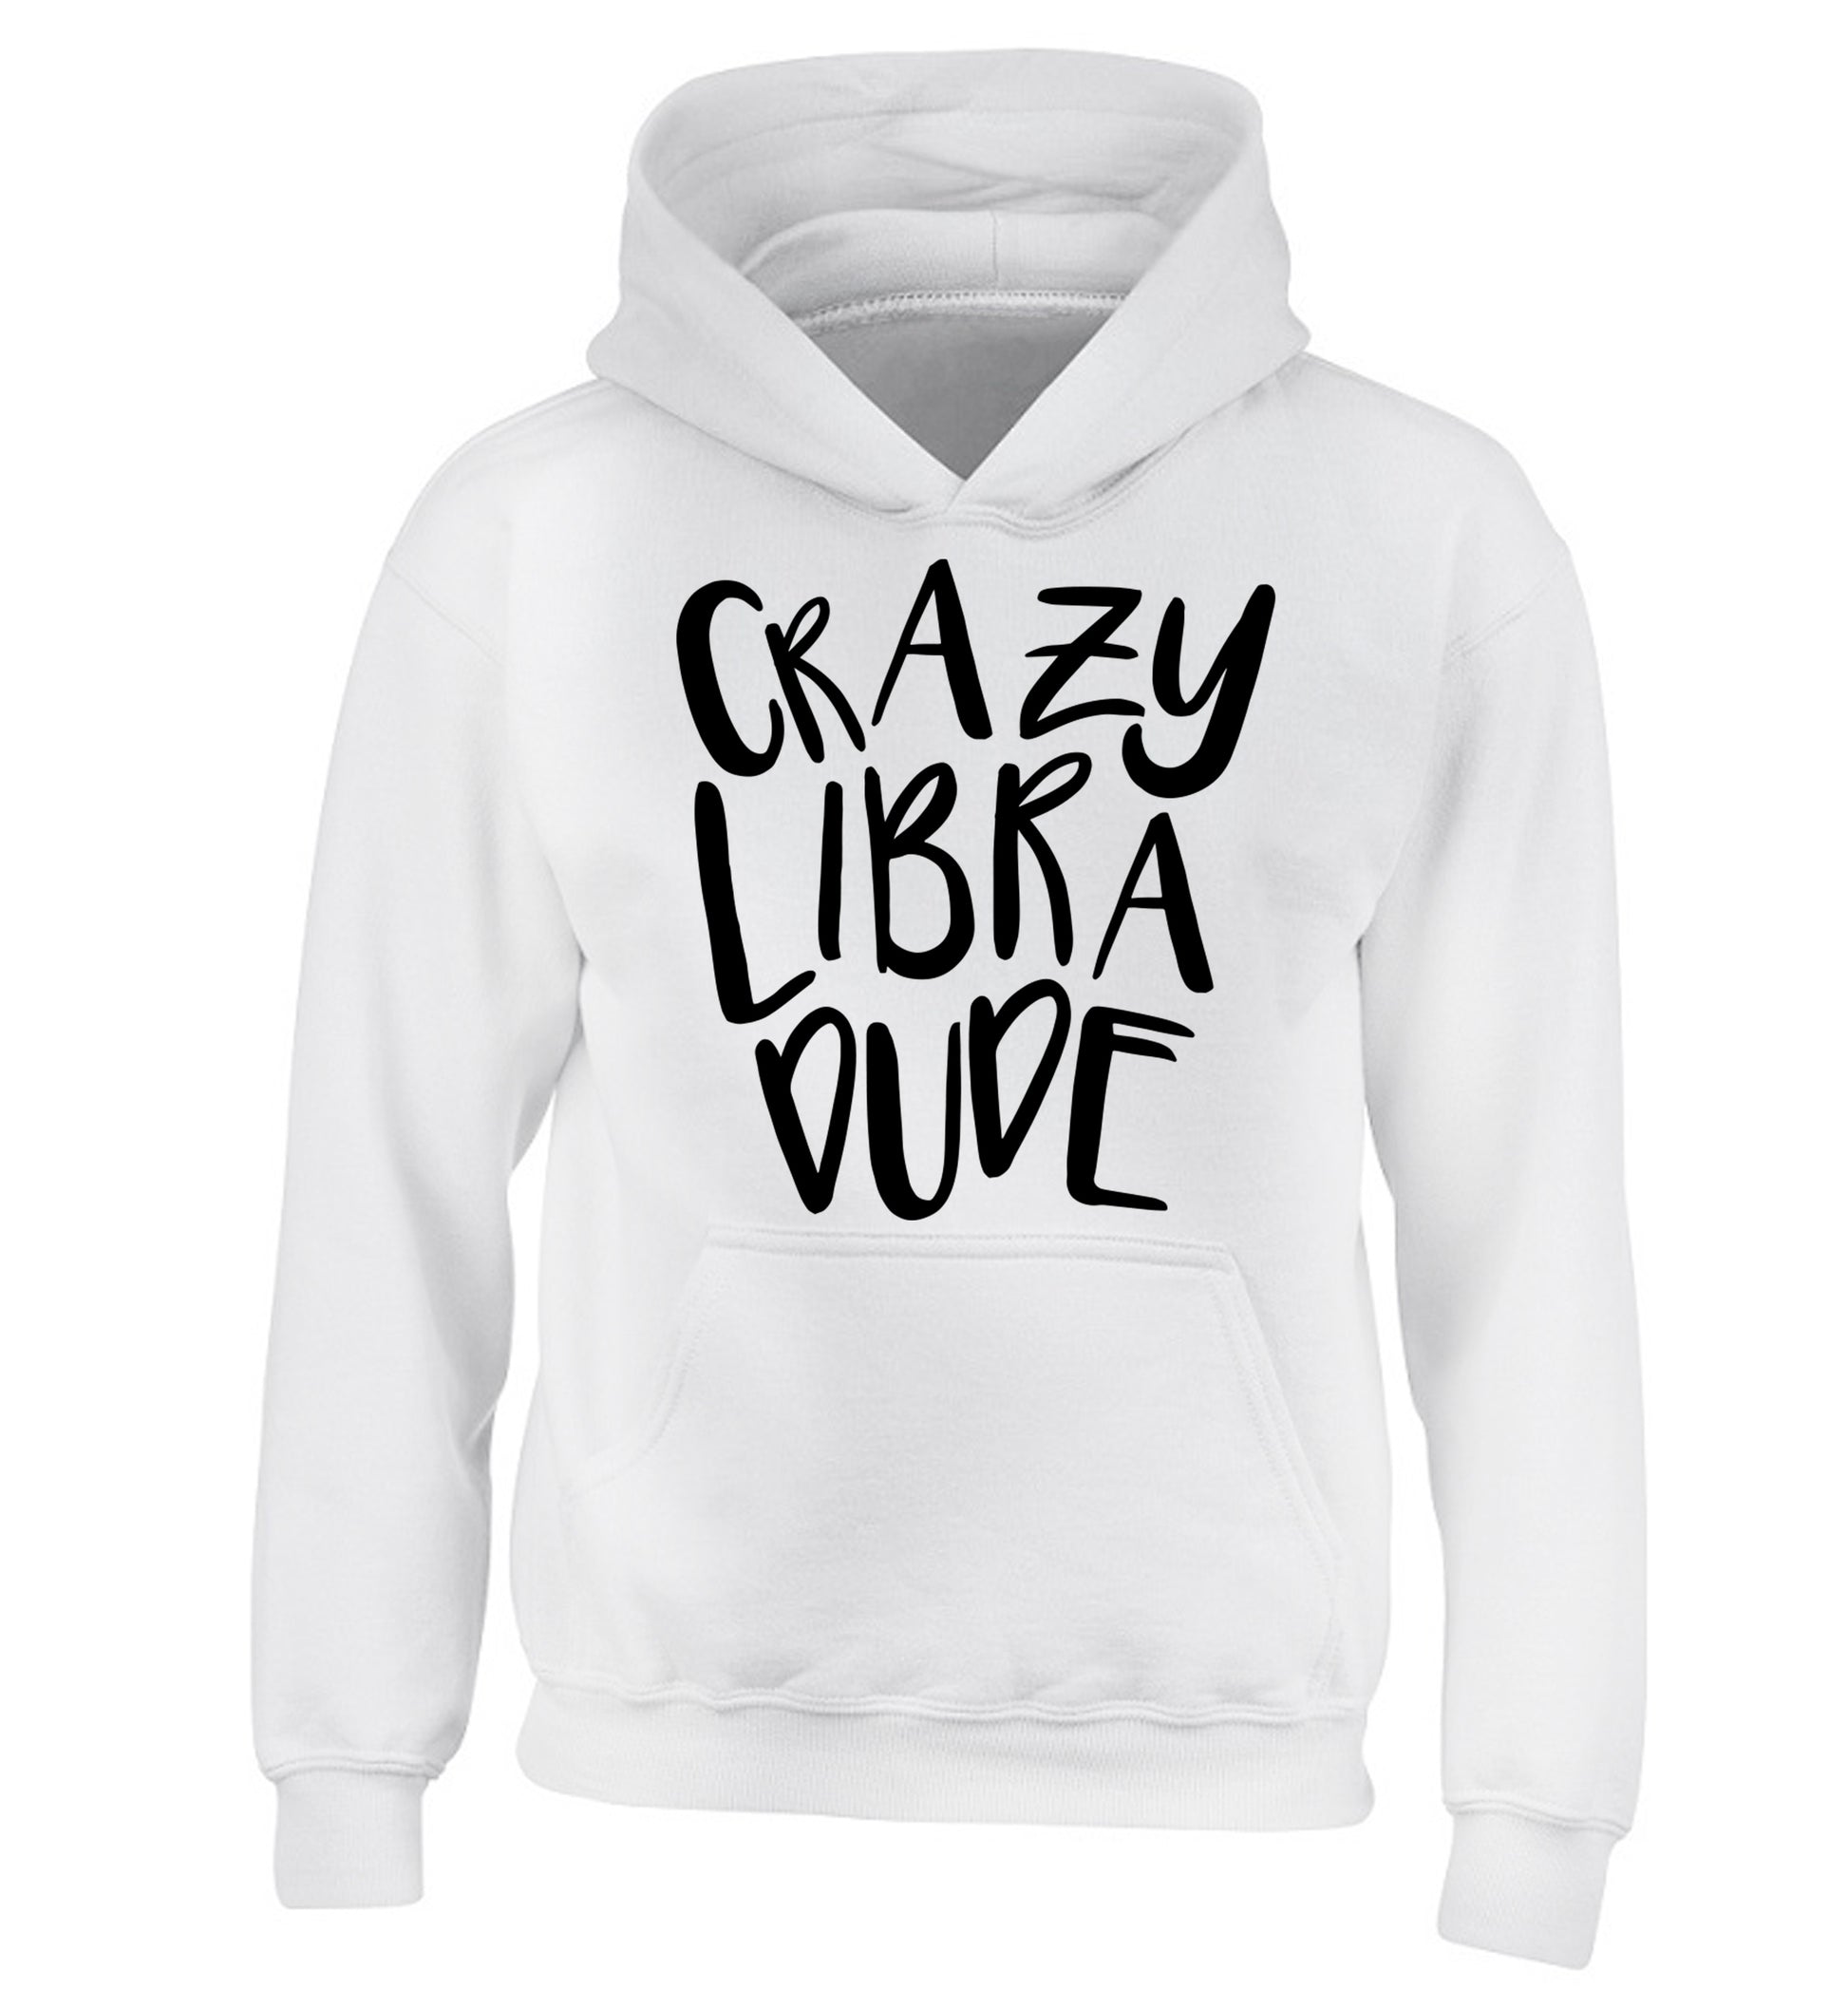 Crazy libra dude children's white hoodie 12-13 Years